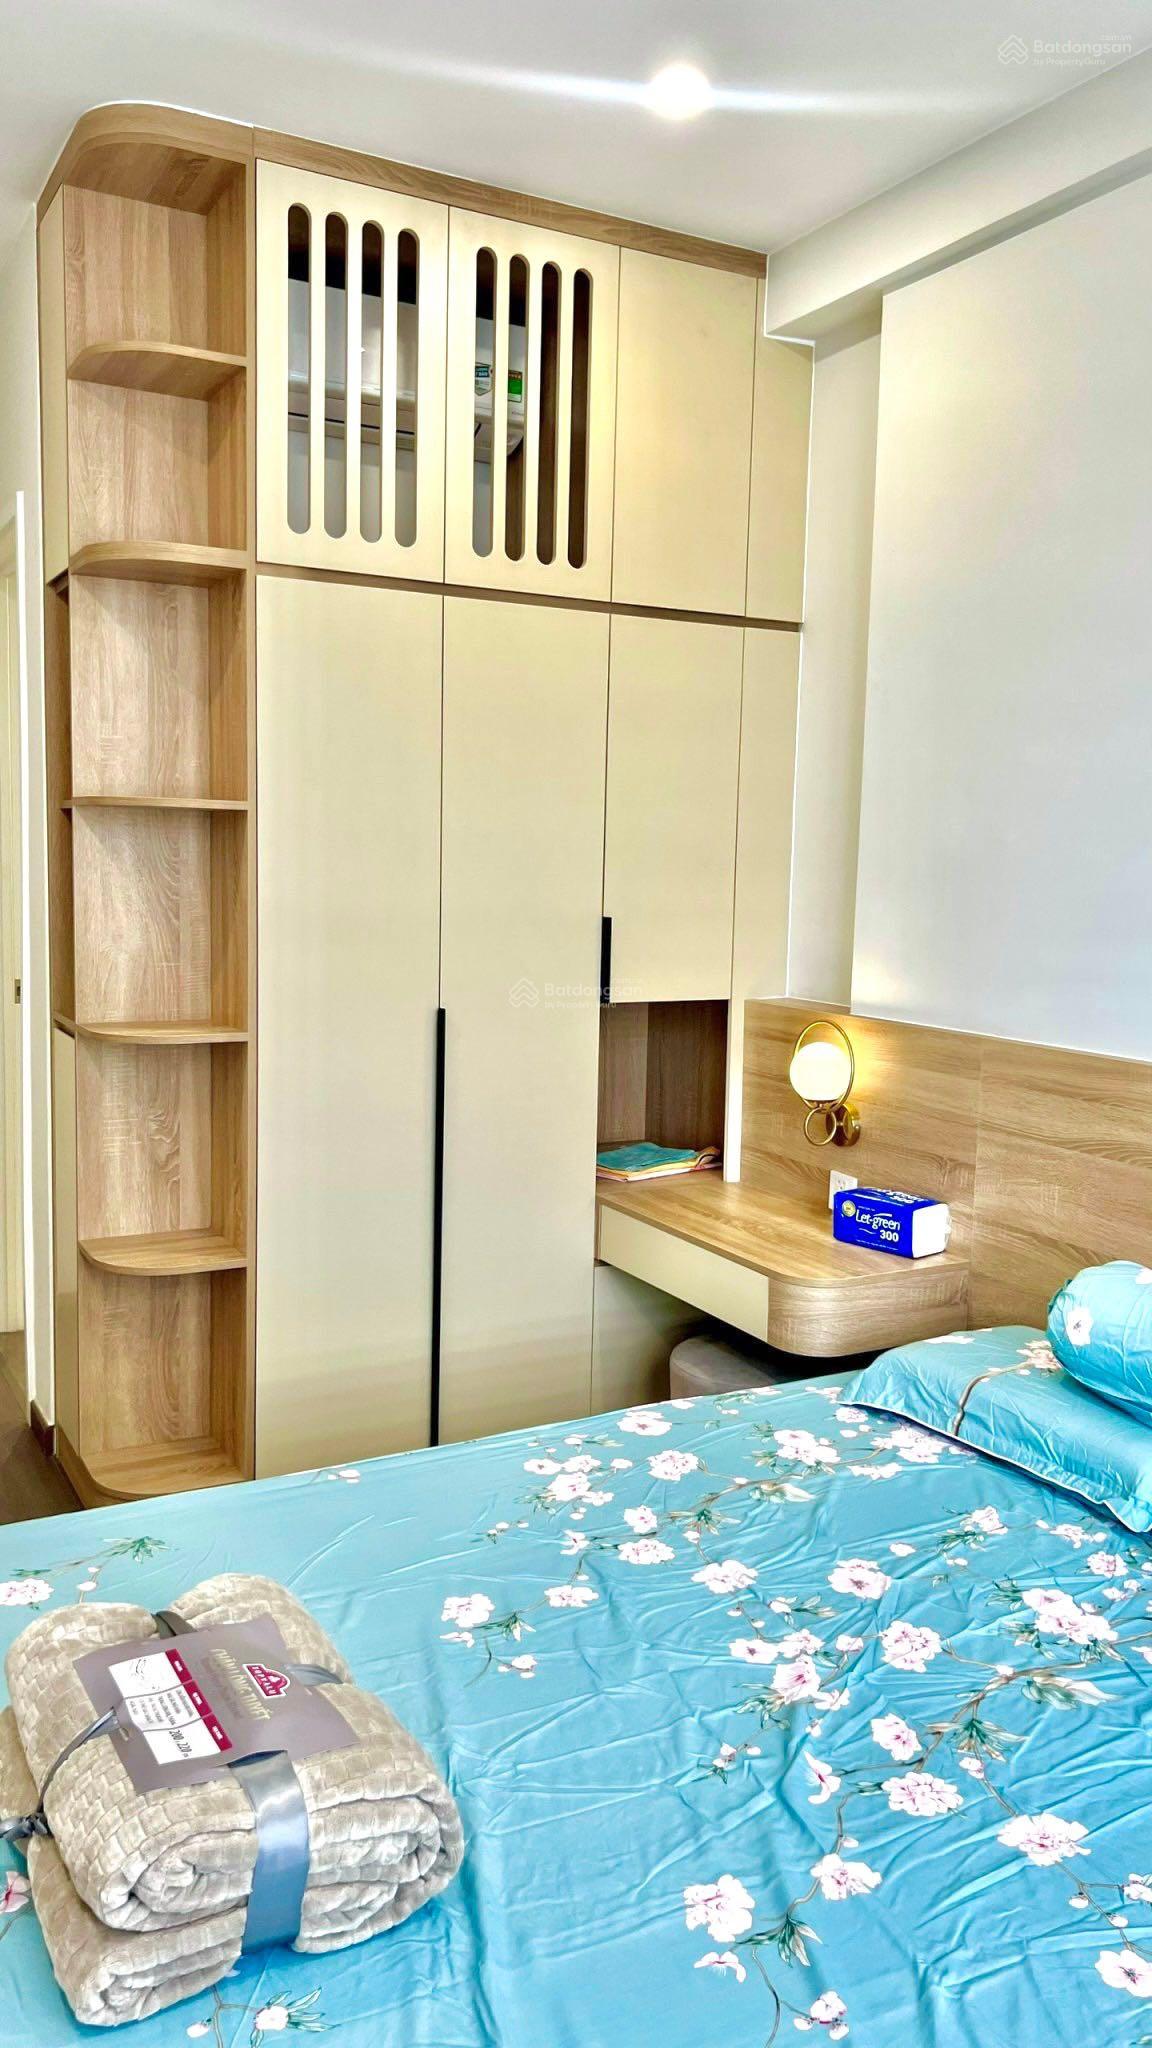 Chính chủ gửi bán gấp lỗ 700tr căn hộ 2 phòng ngủ 72m2 tại chung cư Emerald Golf View Thuận An - Ảnh 1